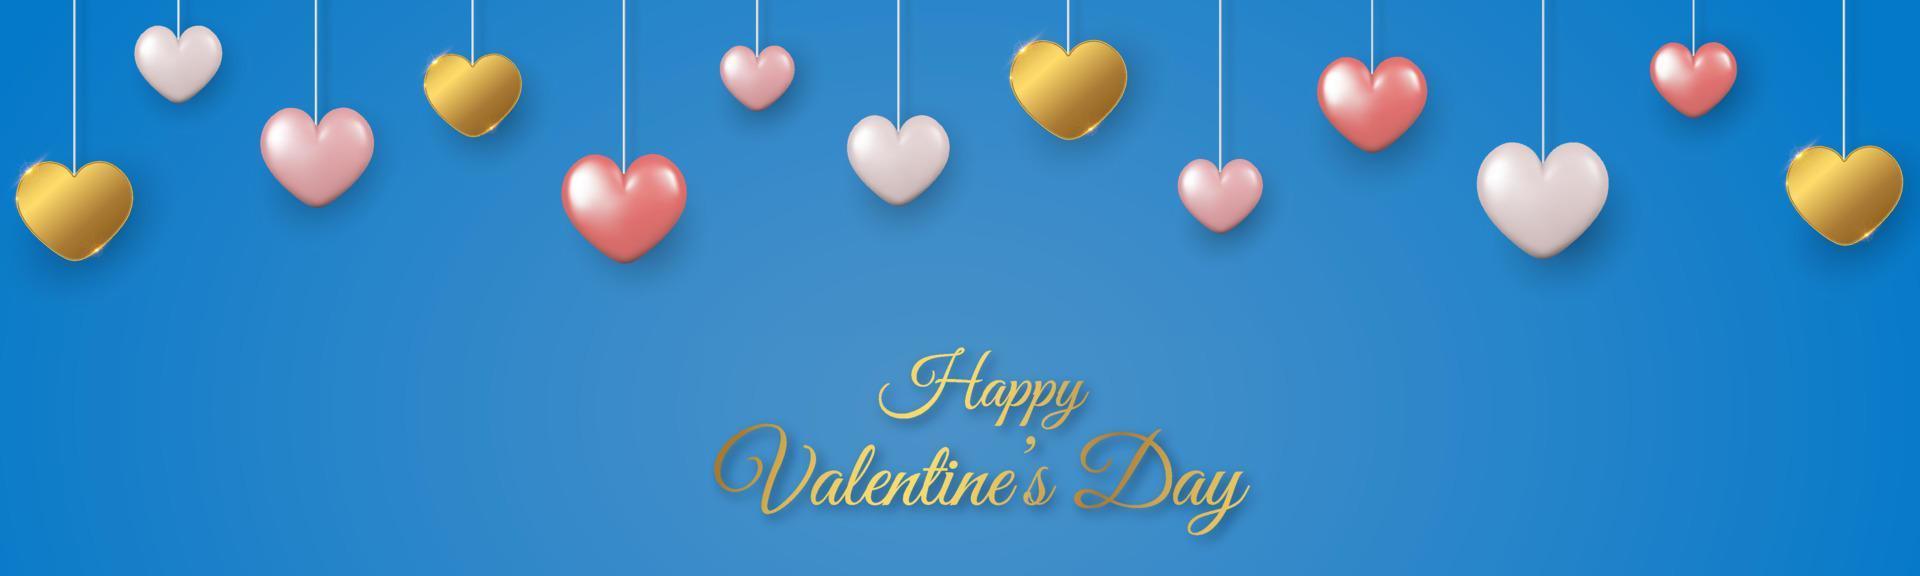 contento San Valentín día horizontal bandera con rosa, blanco y oro 3d corazones en azul antecedentes. vector